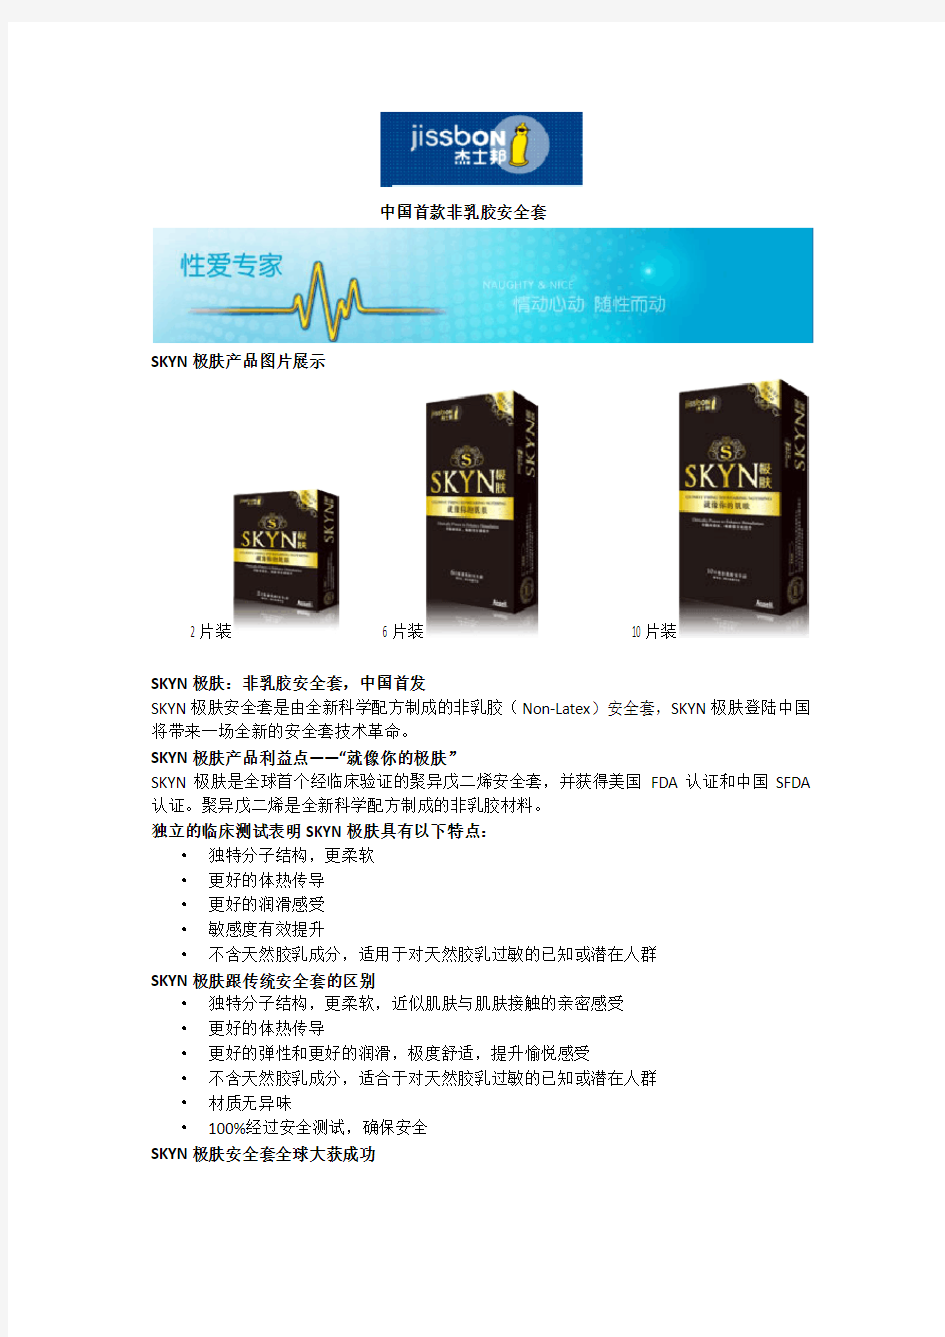 杰士邦包装调研报告中国首款非乳胶安全套